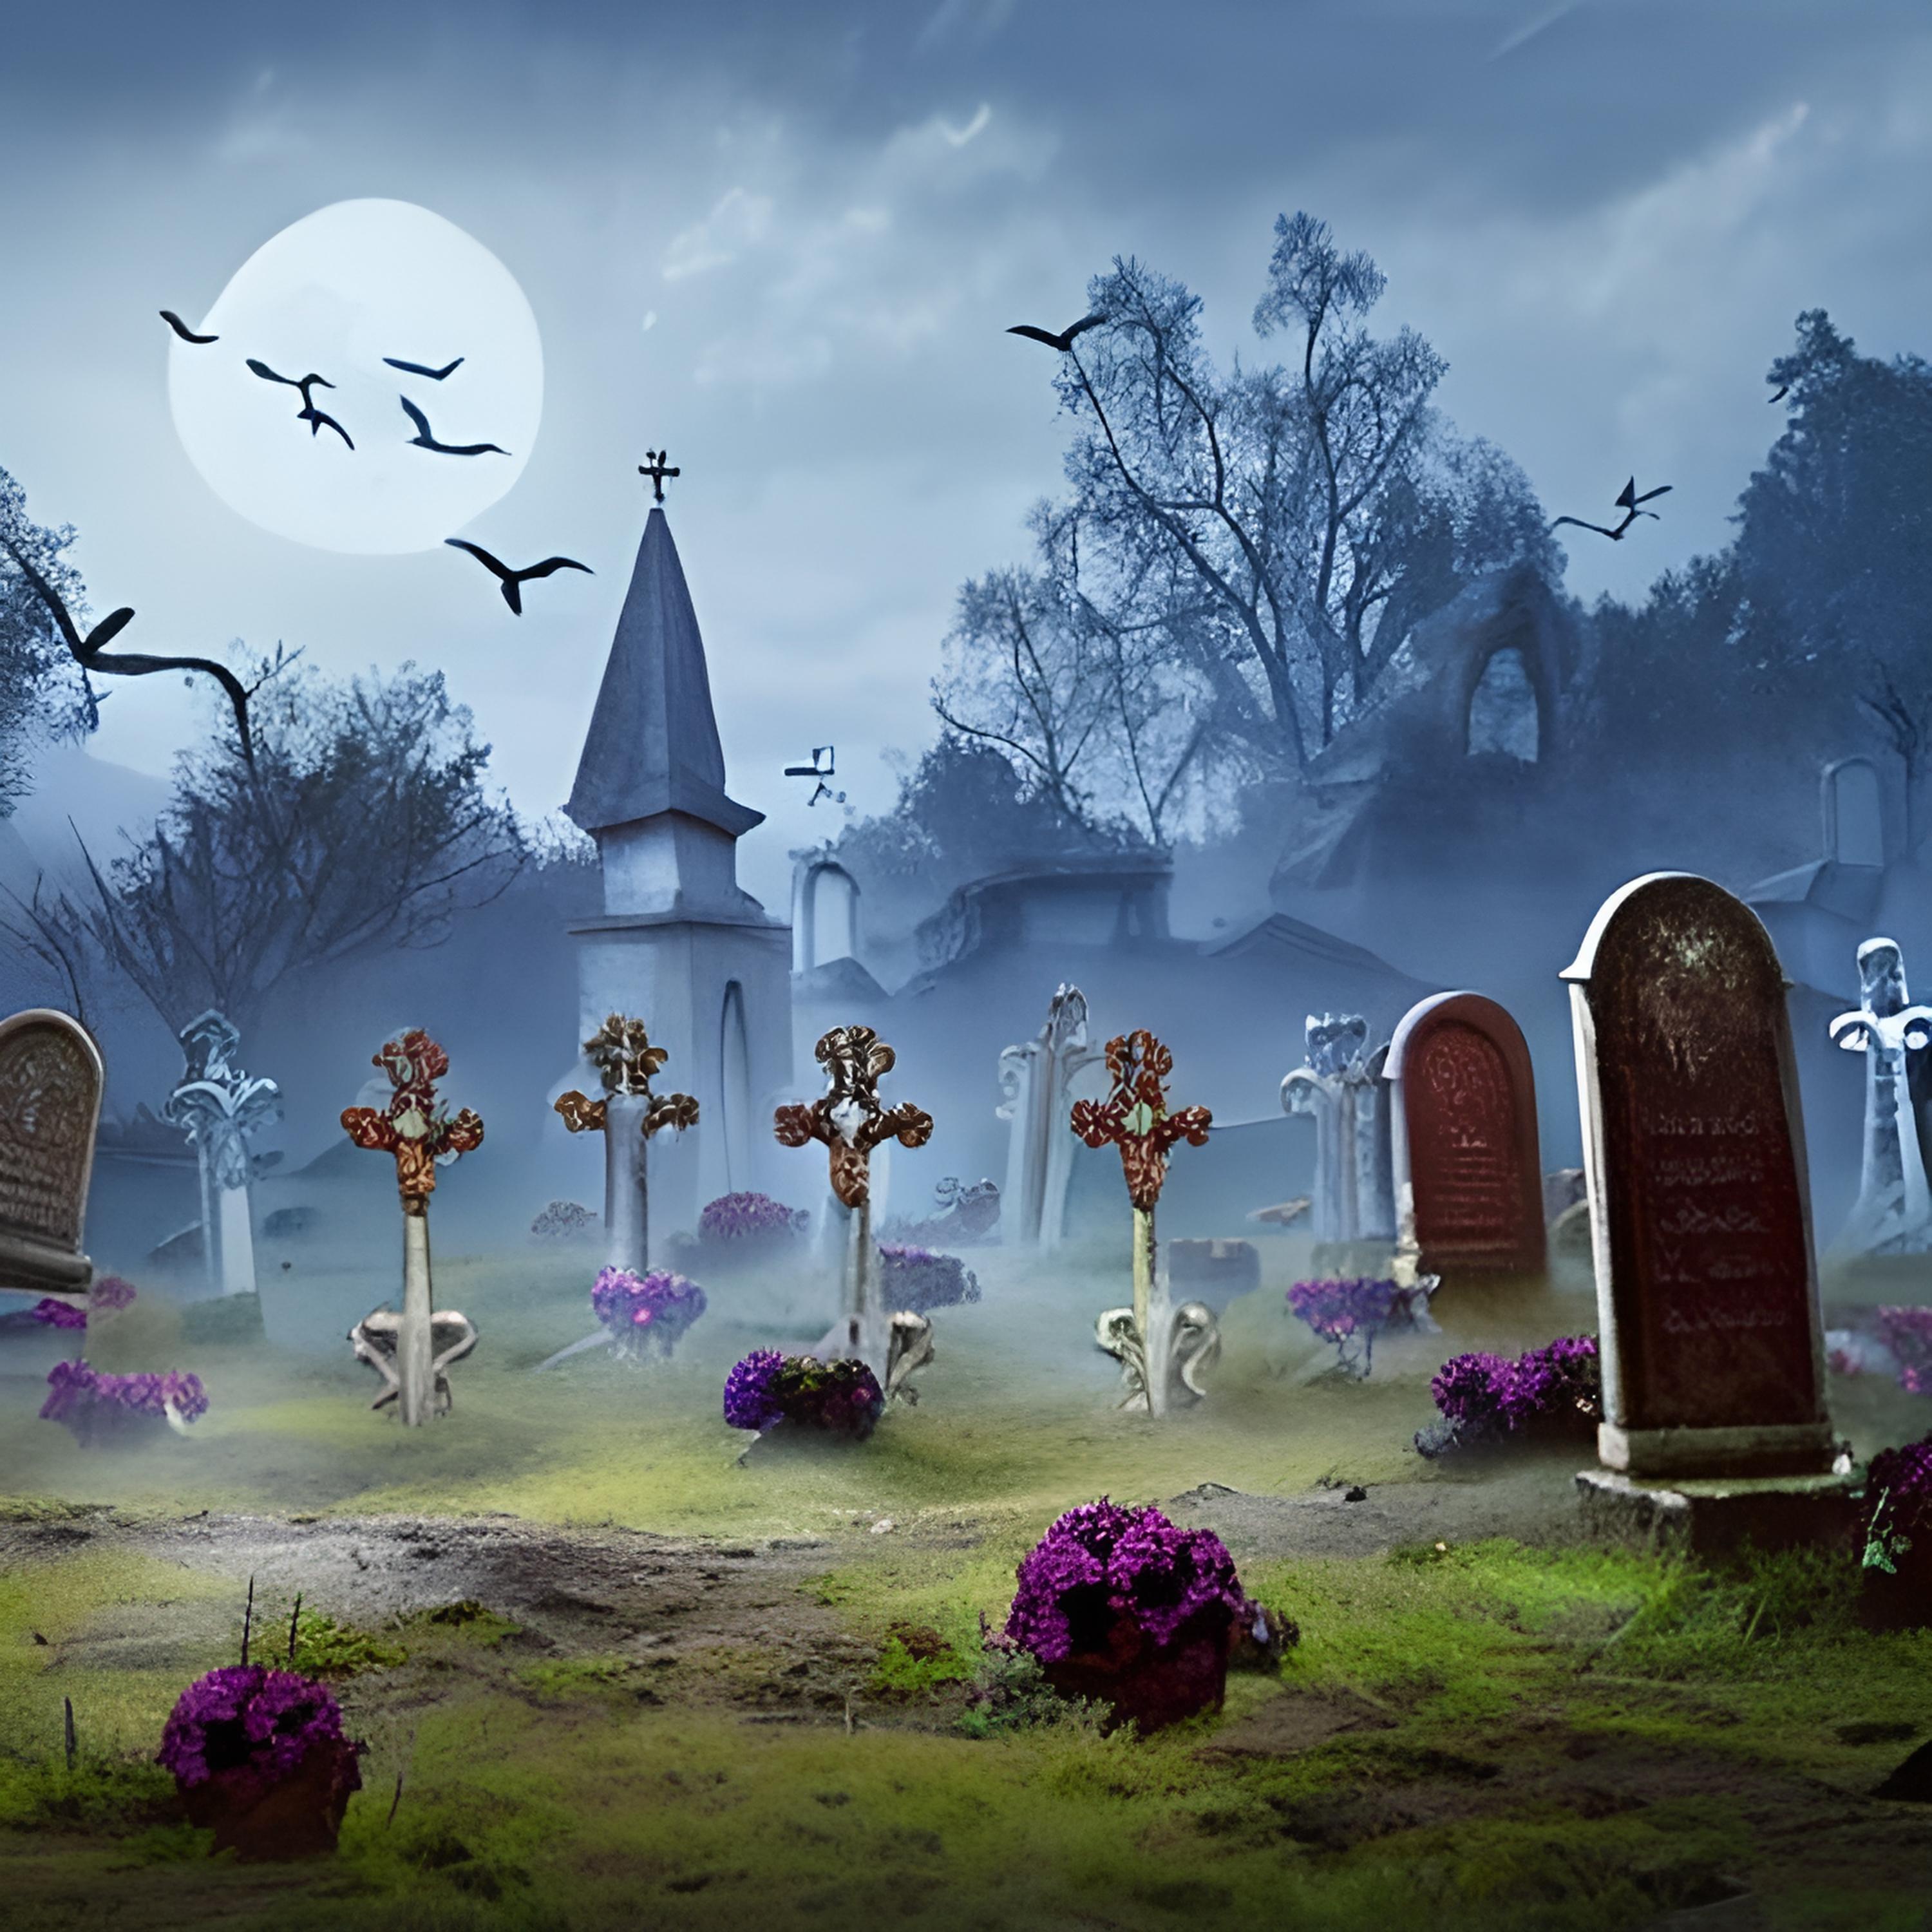 Постер альбома Cementerio